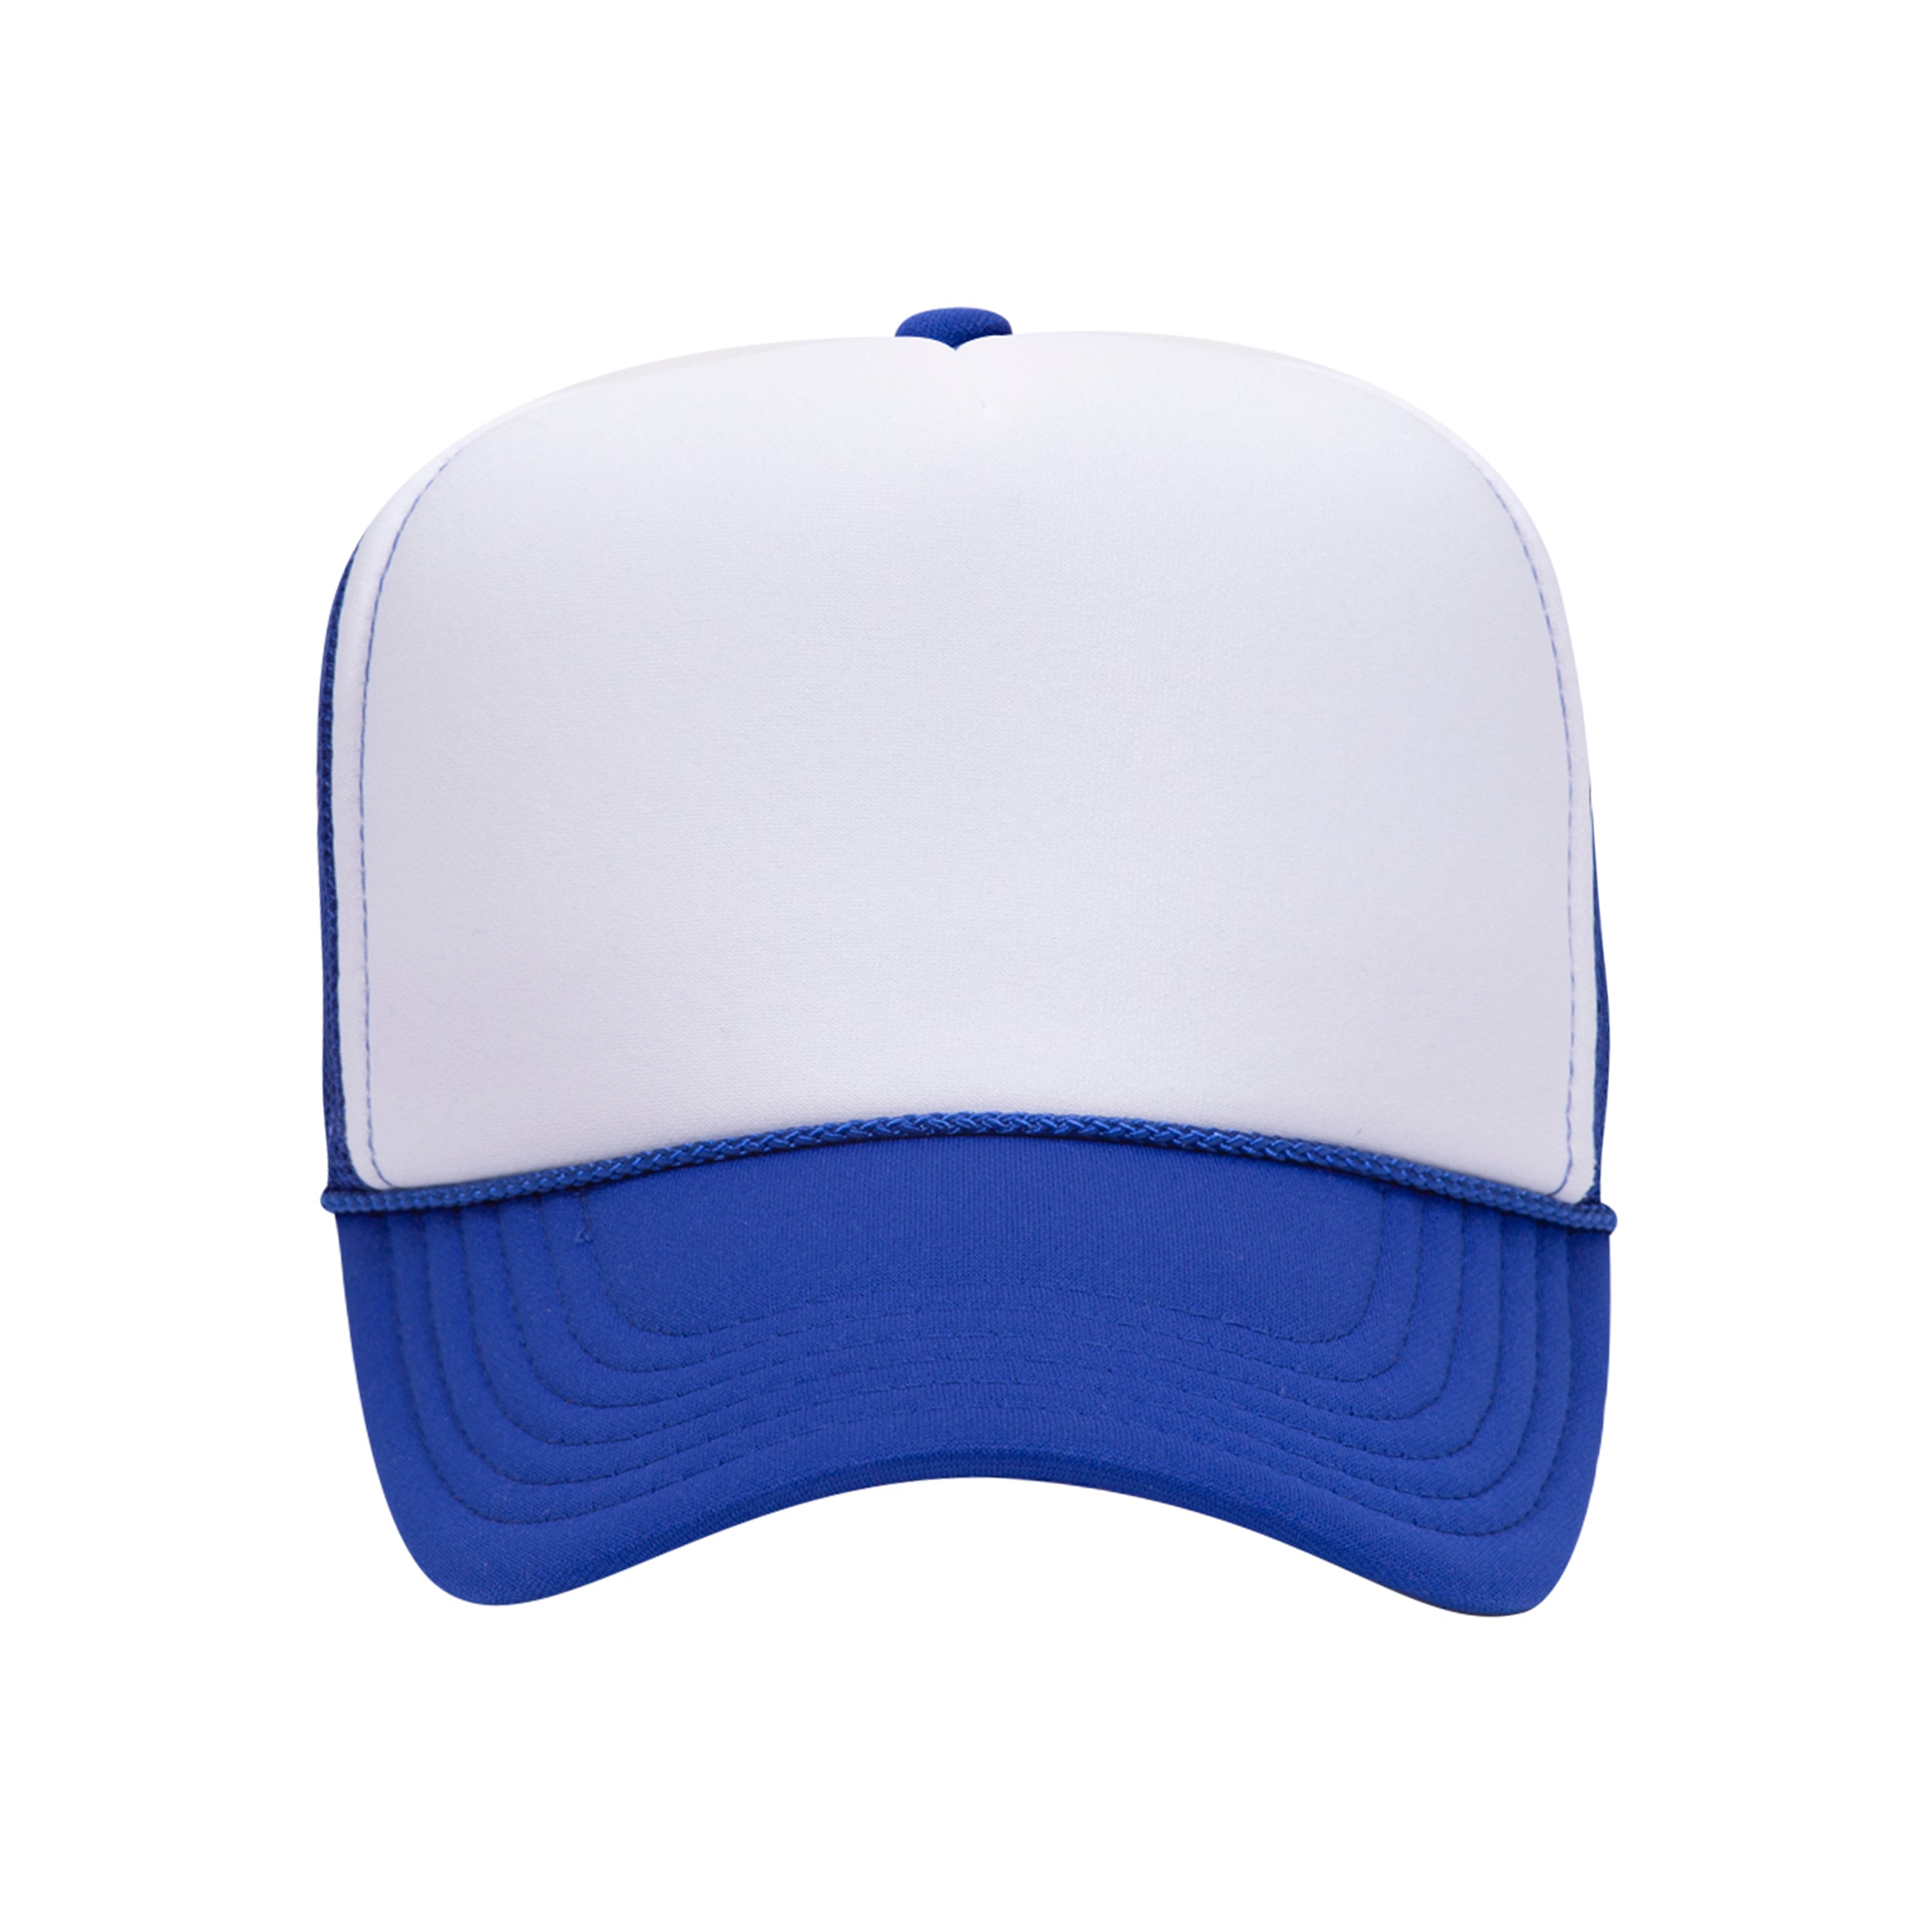 Two Tone Trucker Hats - Royal Blue Blank Trucker Cap